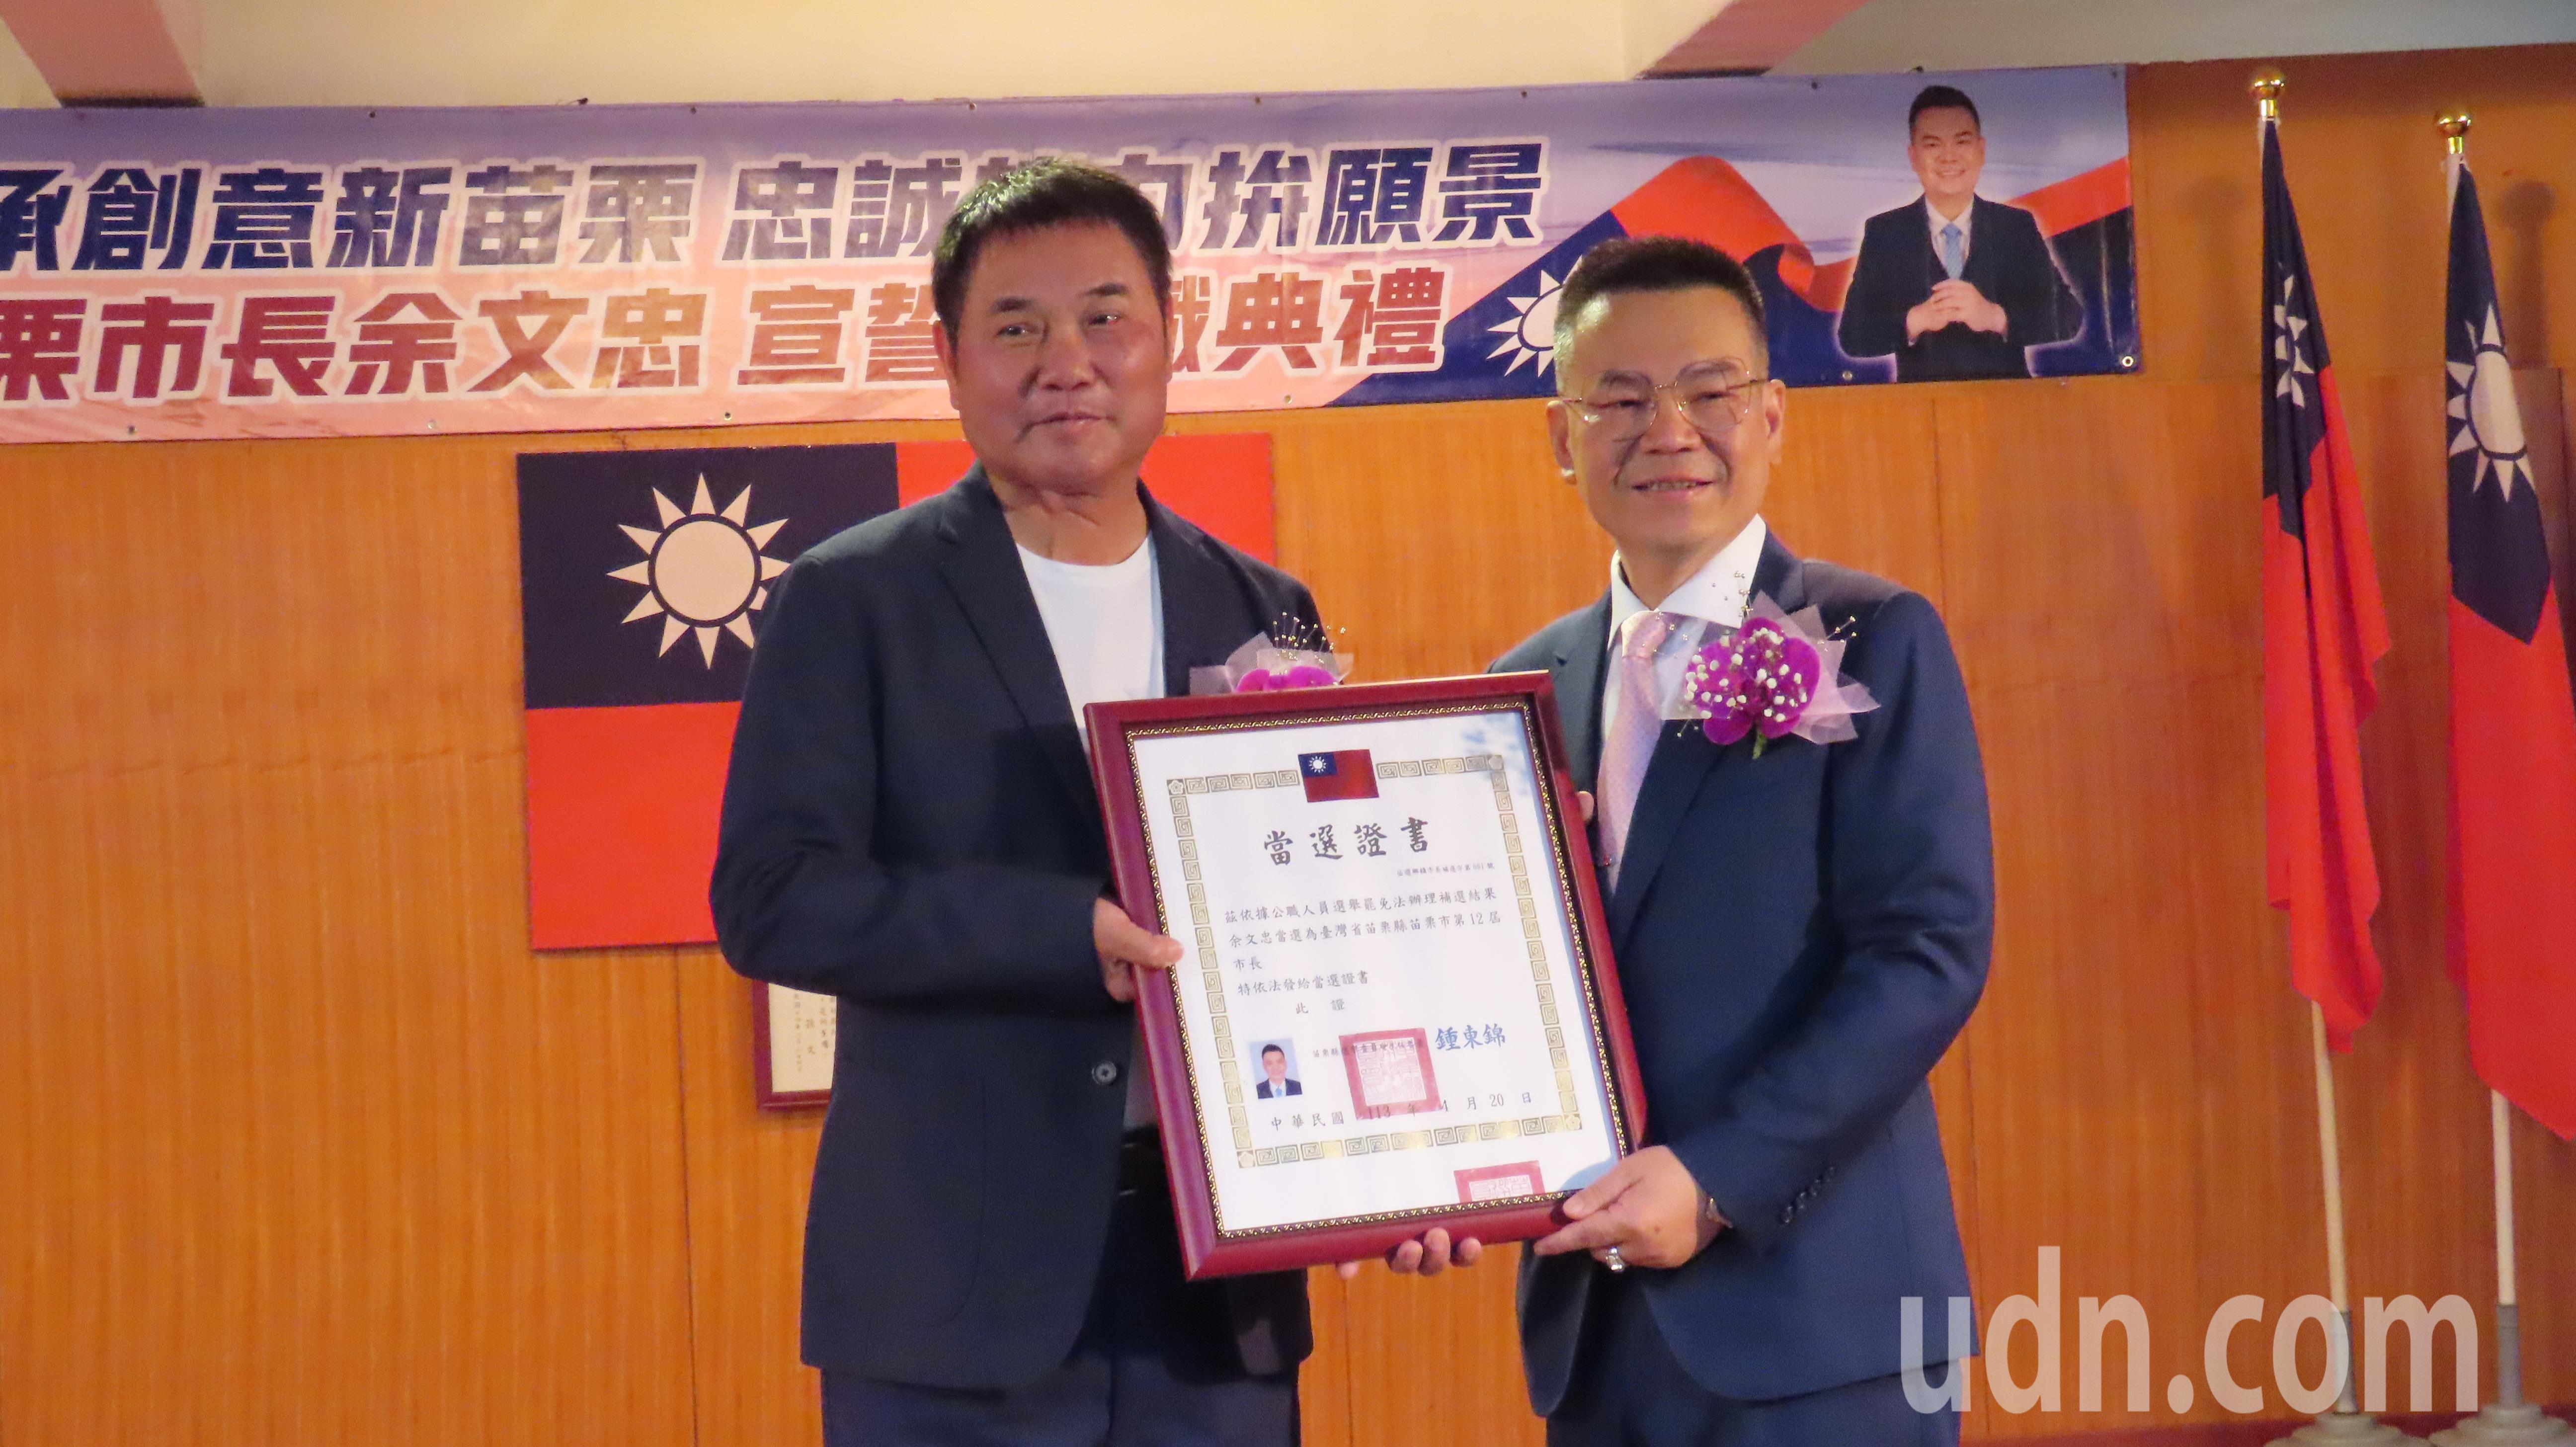 苗栗市长余文忠（右）今天上任，县长钟东锦（左）颁发当选证书。记者范荣达／摄影